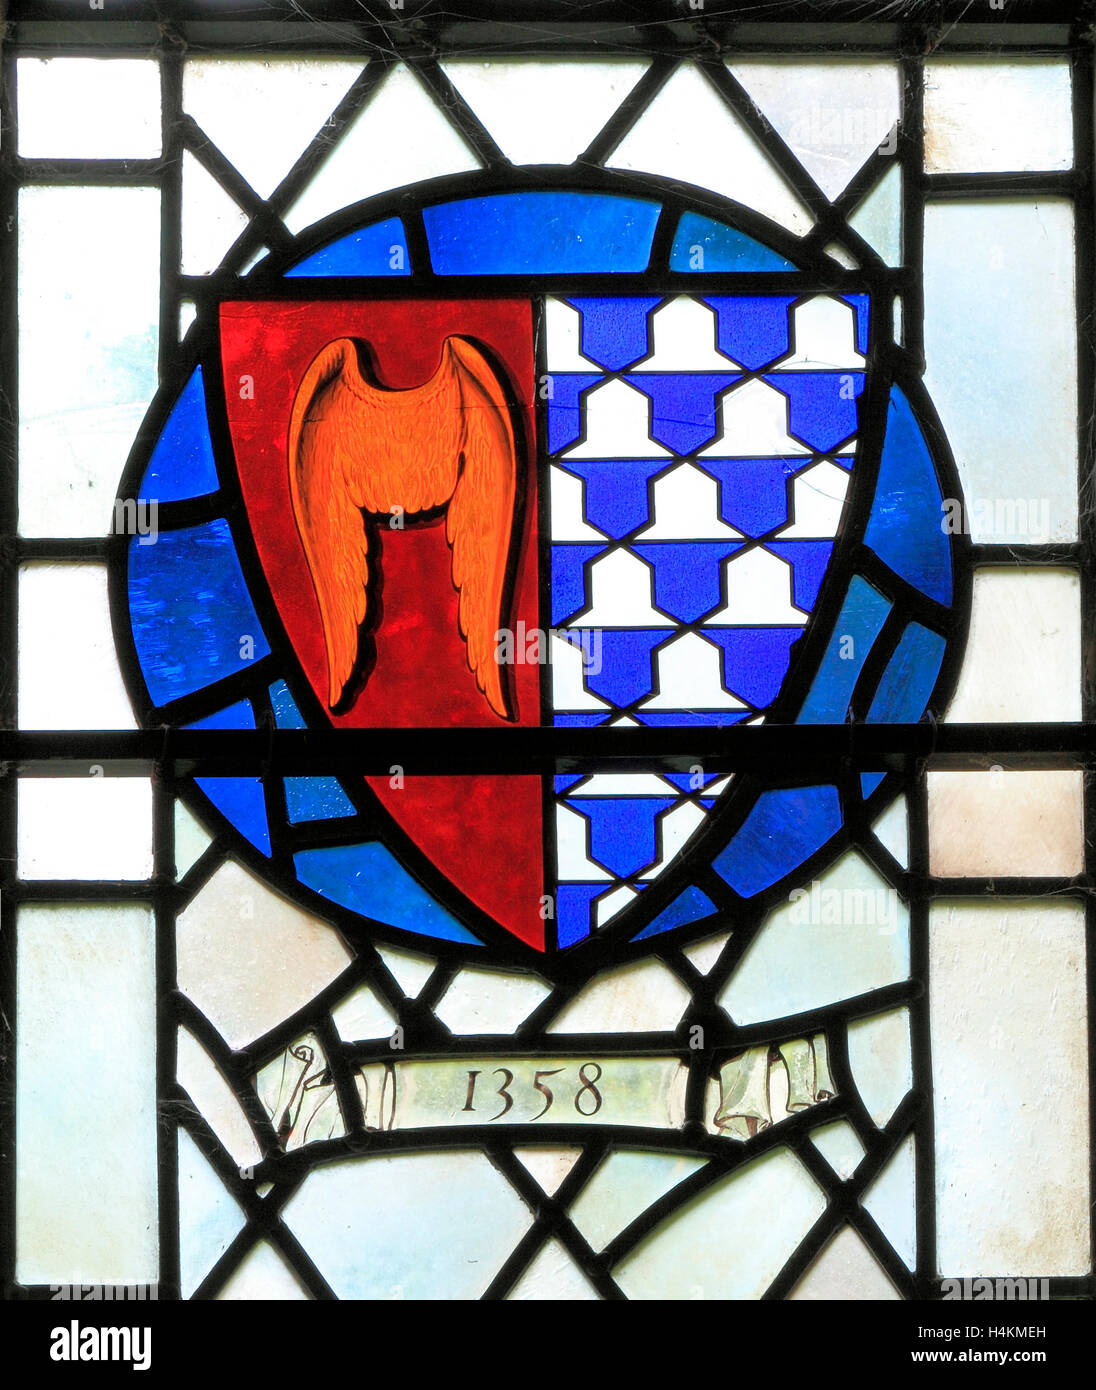 Stanhoe, Norfolk, bras de Roger Seymour de Woundy Miles, 1358, le vitrail de la fenêtre, l'héraldique, la cocarde de bouclier héraldique device Banque D'Images